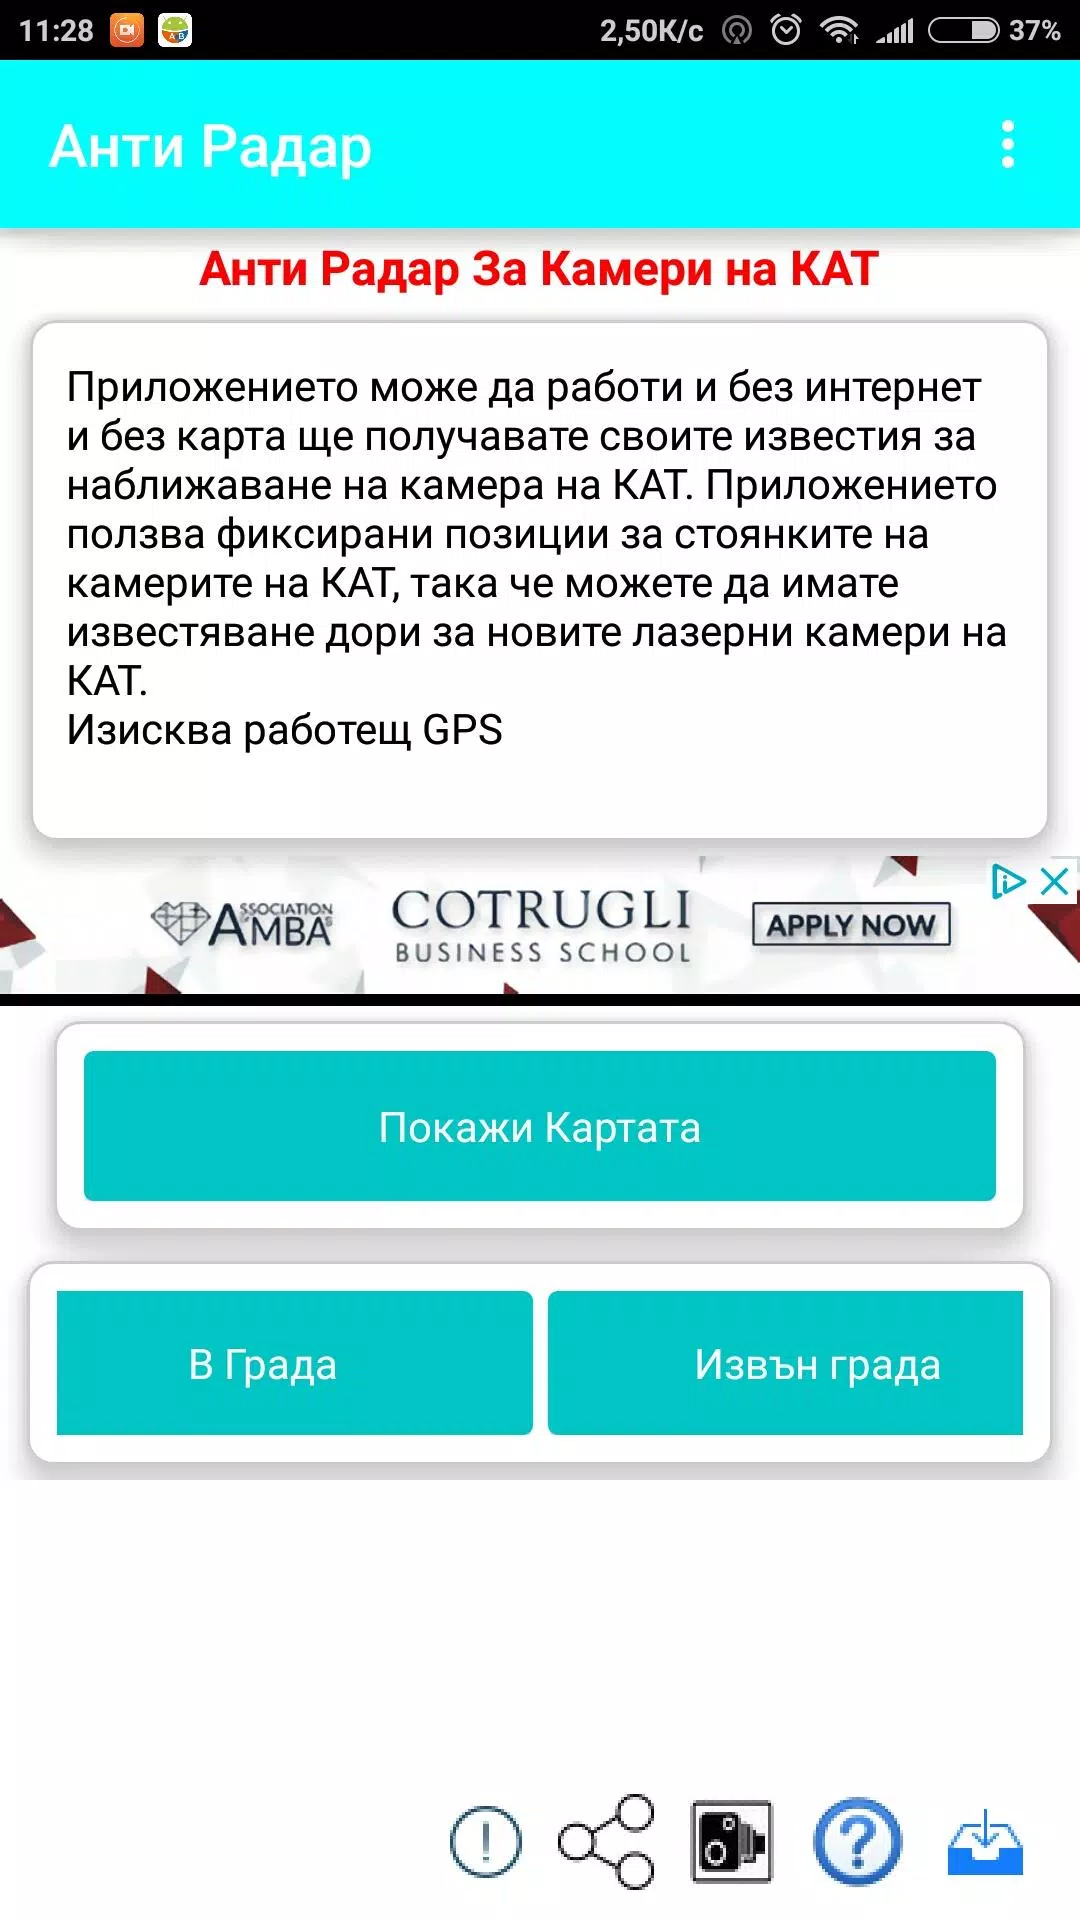 АнтиРадар - Камери България APK for Android Download